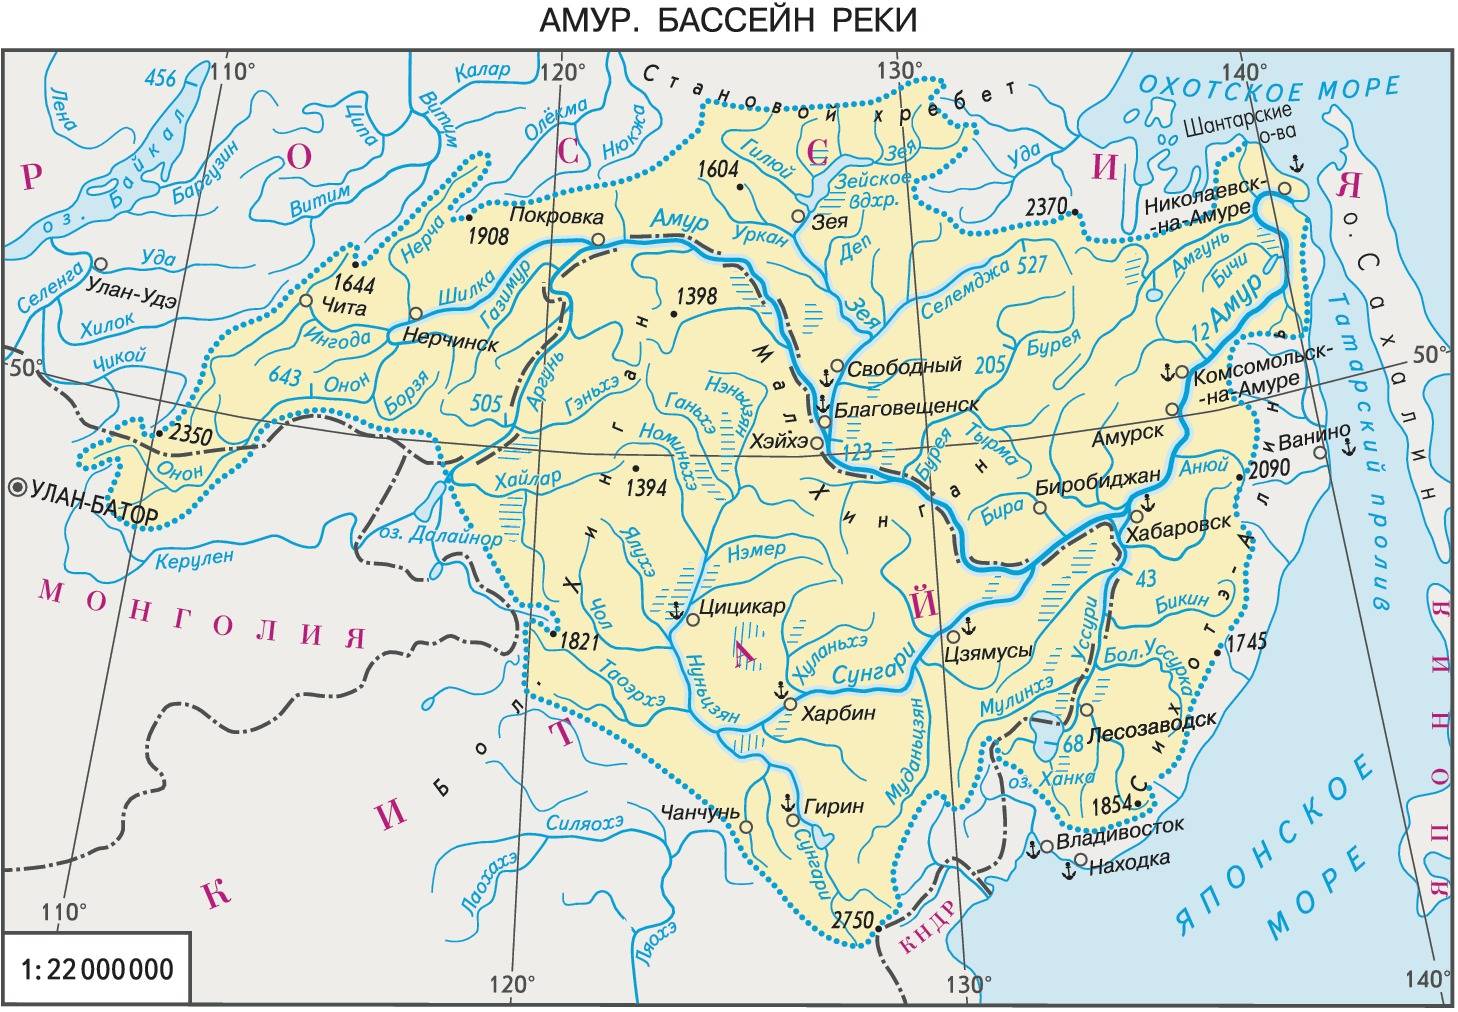 реки амурской области описание